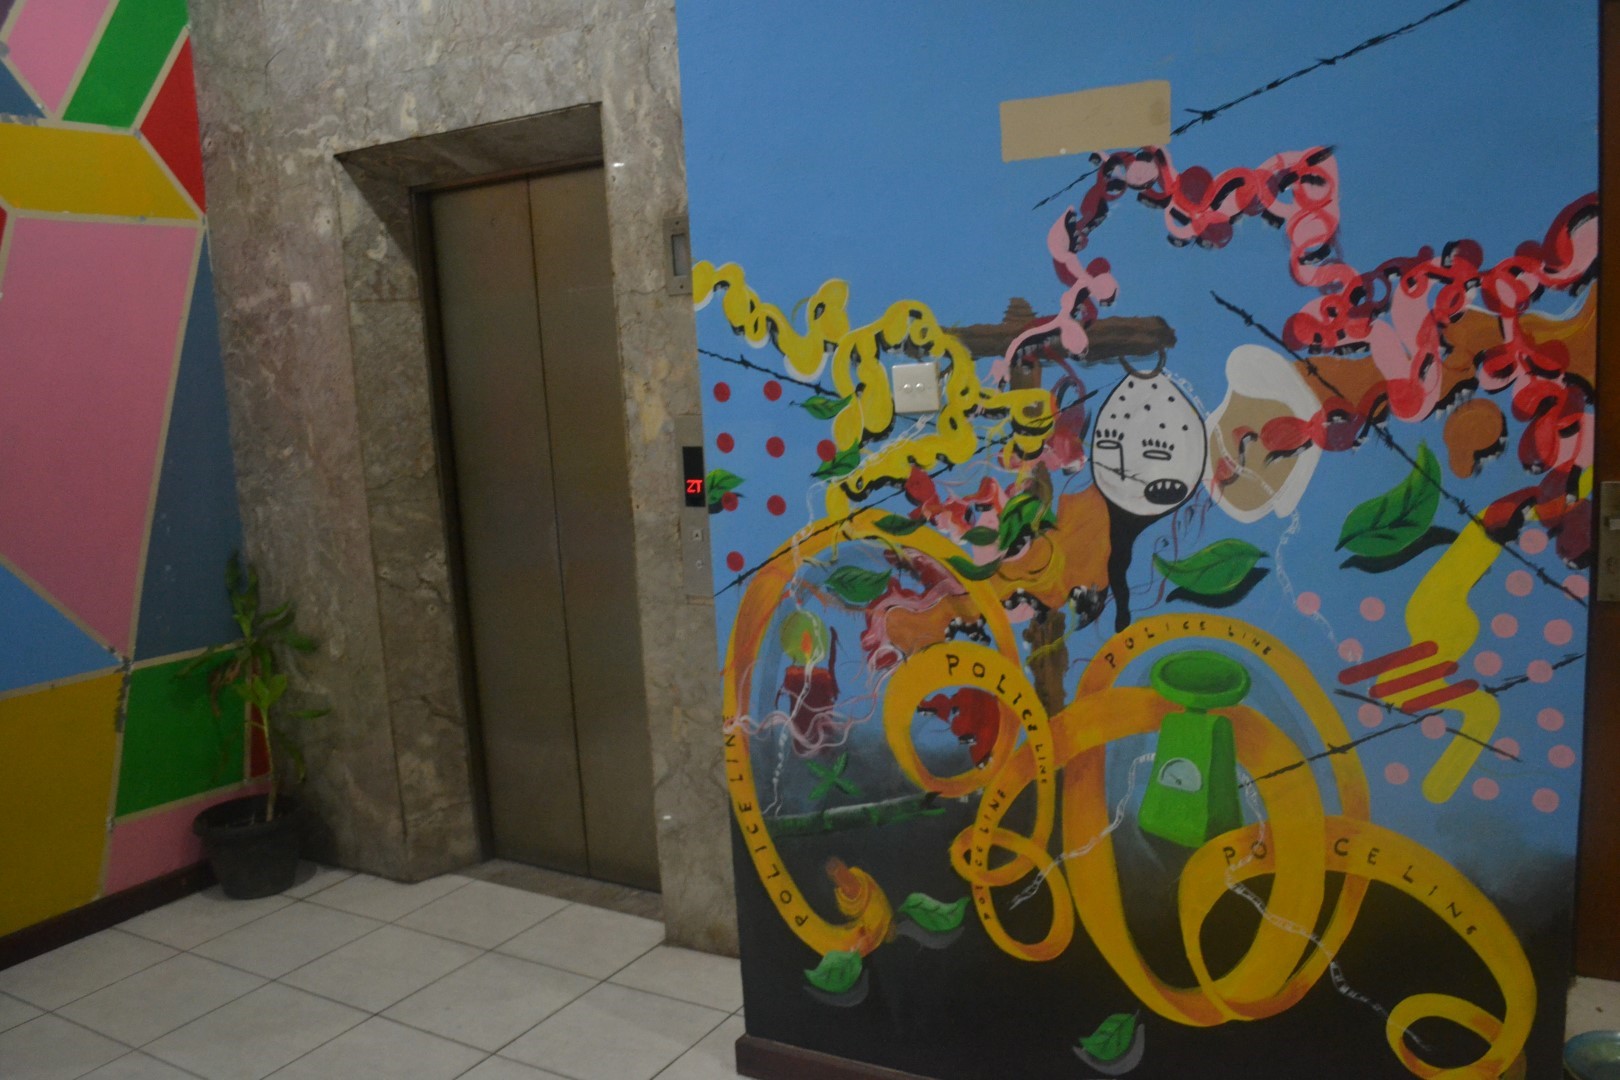 Tak jauh dari mural Gus Dur, tepatnya di depan lift lantai 1 terdapat mural yang “instagram-able” dengan komponen warna dan gambar yang menarik. Hal ini menunjukkan bahwa di setiap perjuangan pasti terdapat keceriaan.